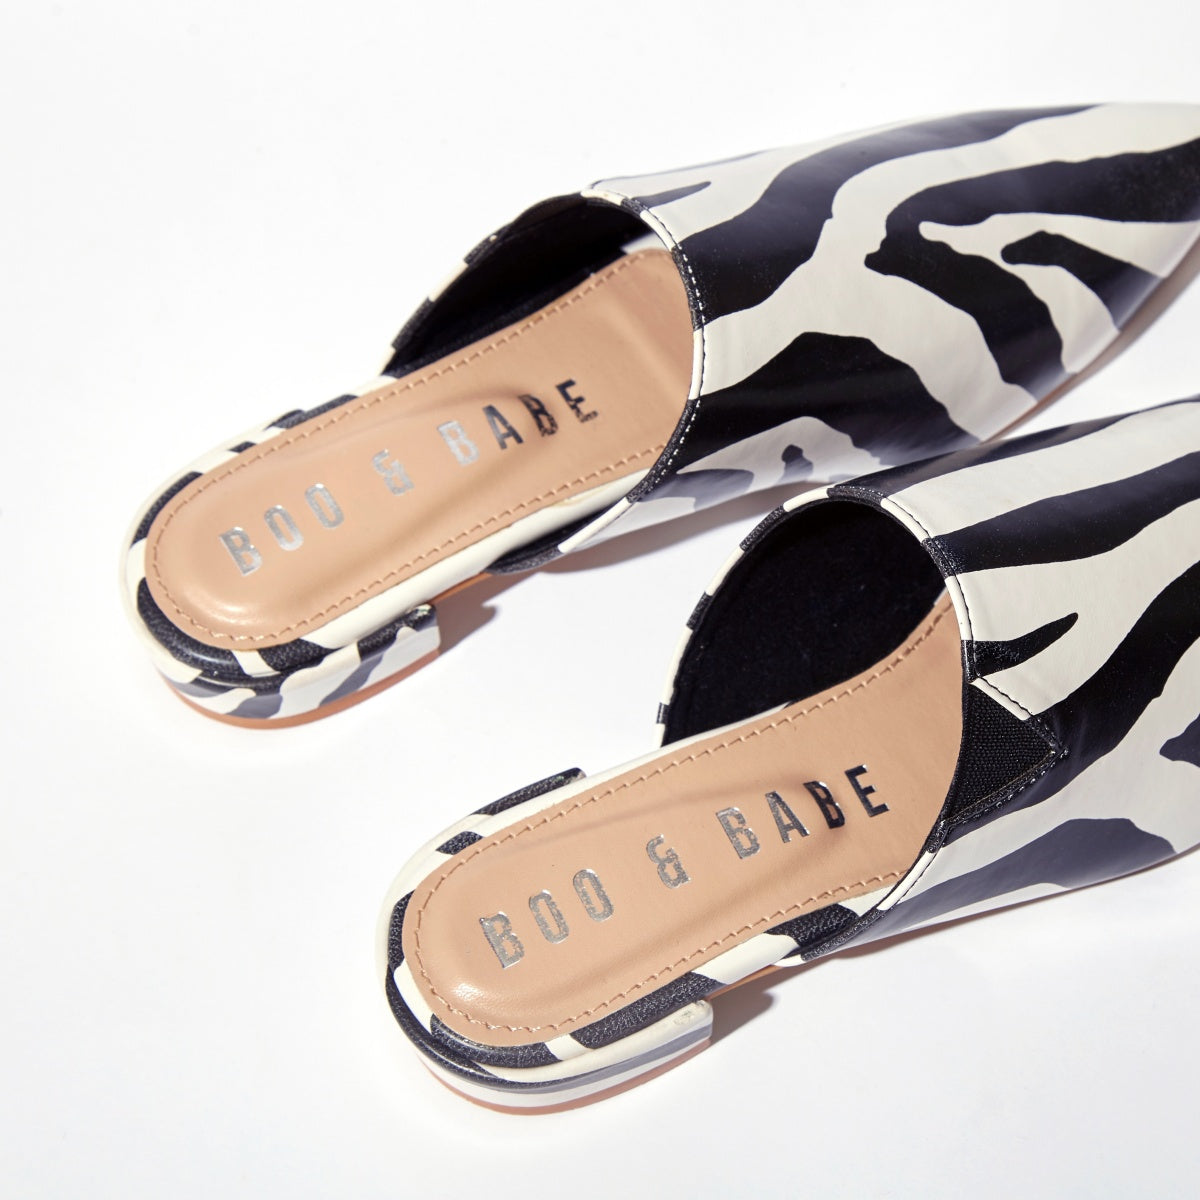 Prancing Zebra Mini Heeled Flats by Boo & Babe